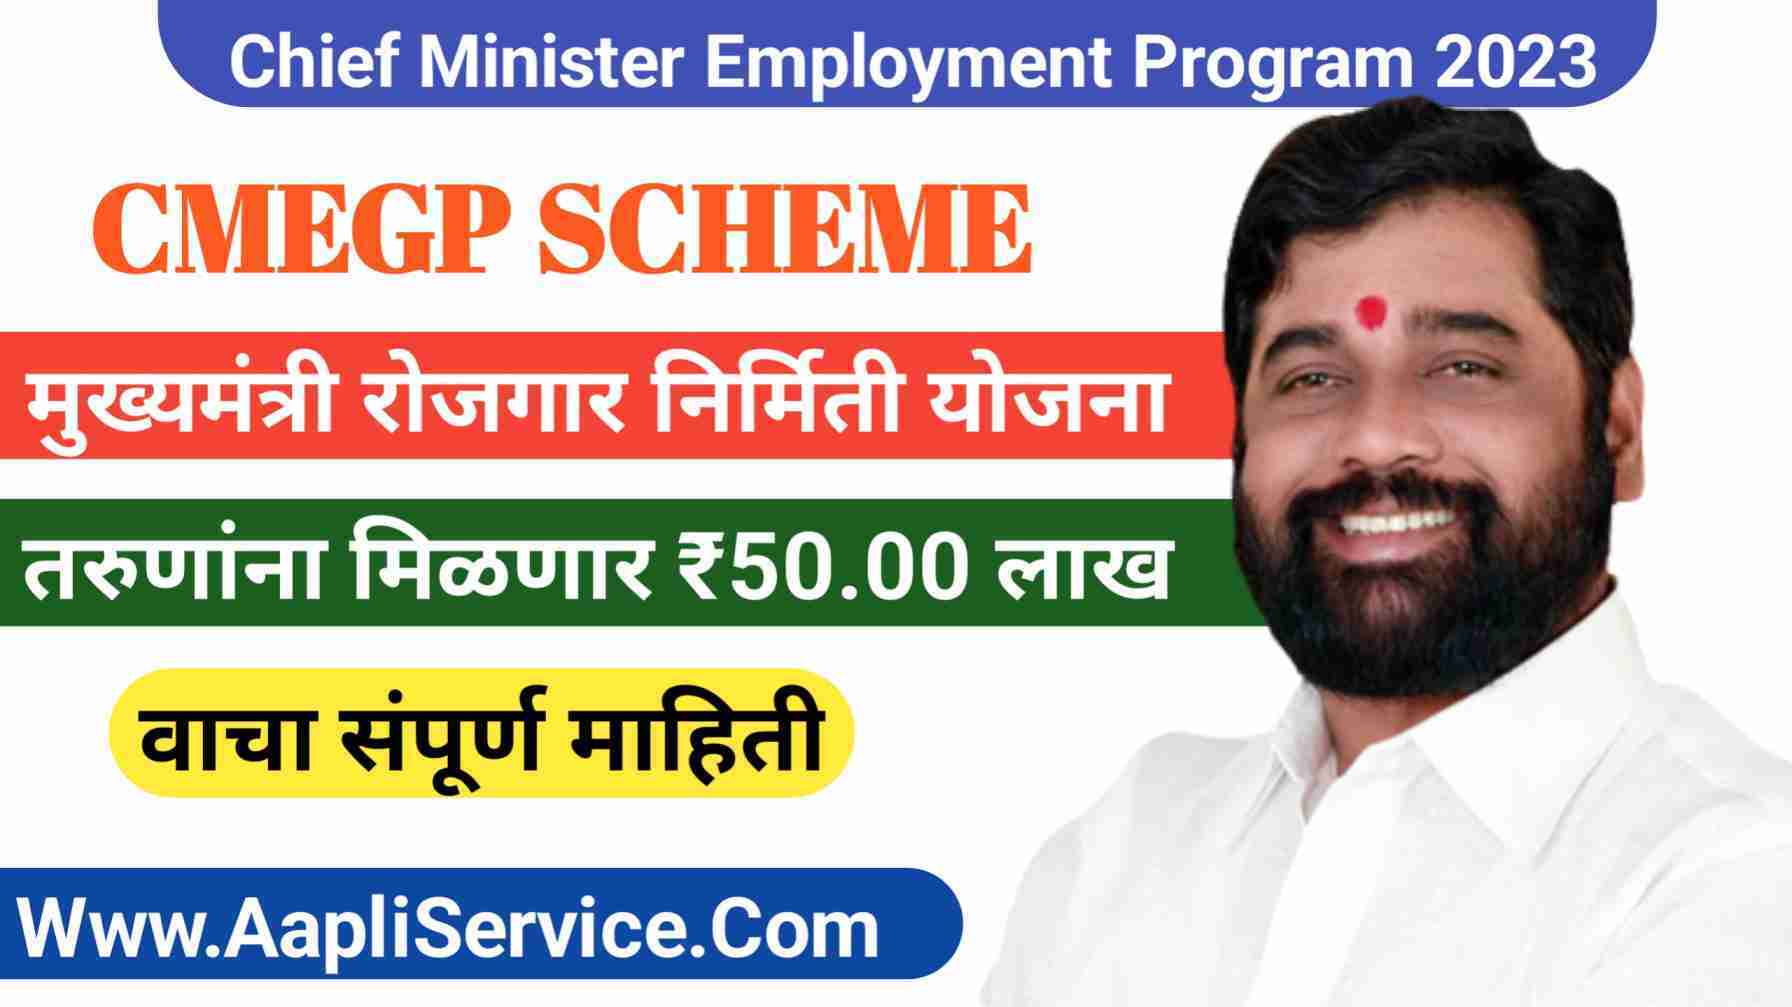 CMEGP SCHEME: मुख्यमंत्री रोजगार निर्मिती योजना, रोजगार निर्मितीसाठी मिळतील ₹50 लाख.